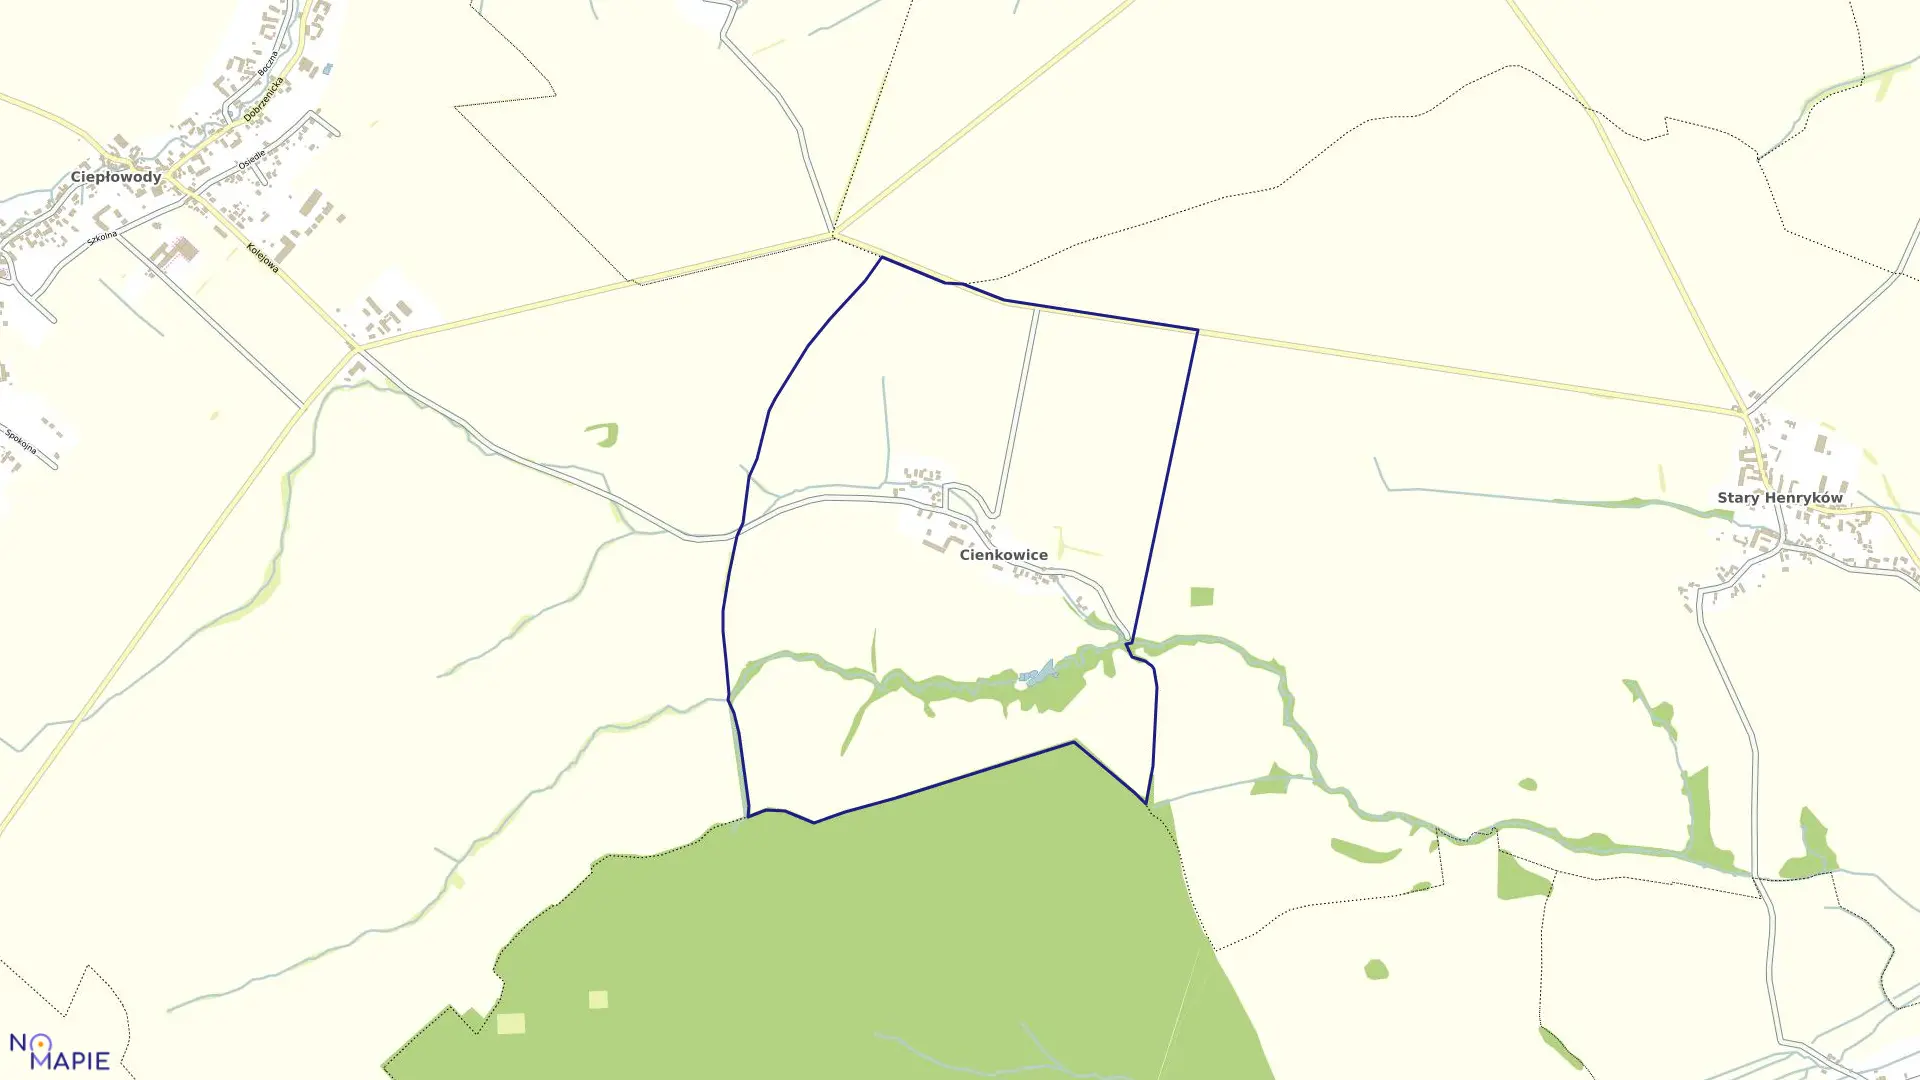 Mapa obrębu CIENKOWICE w gminie Ciepłowody